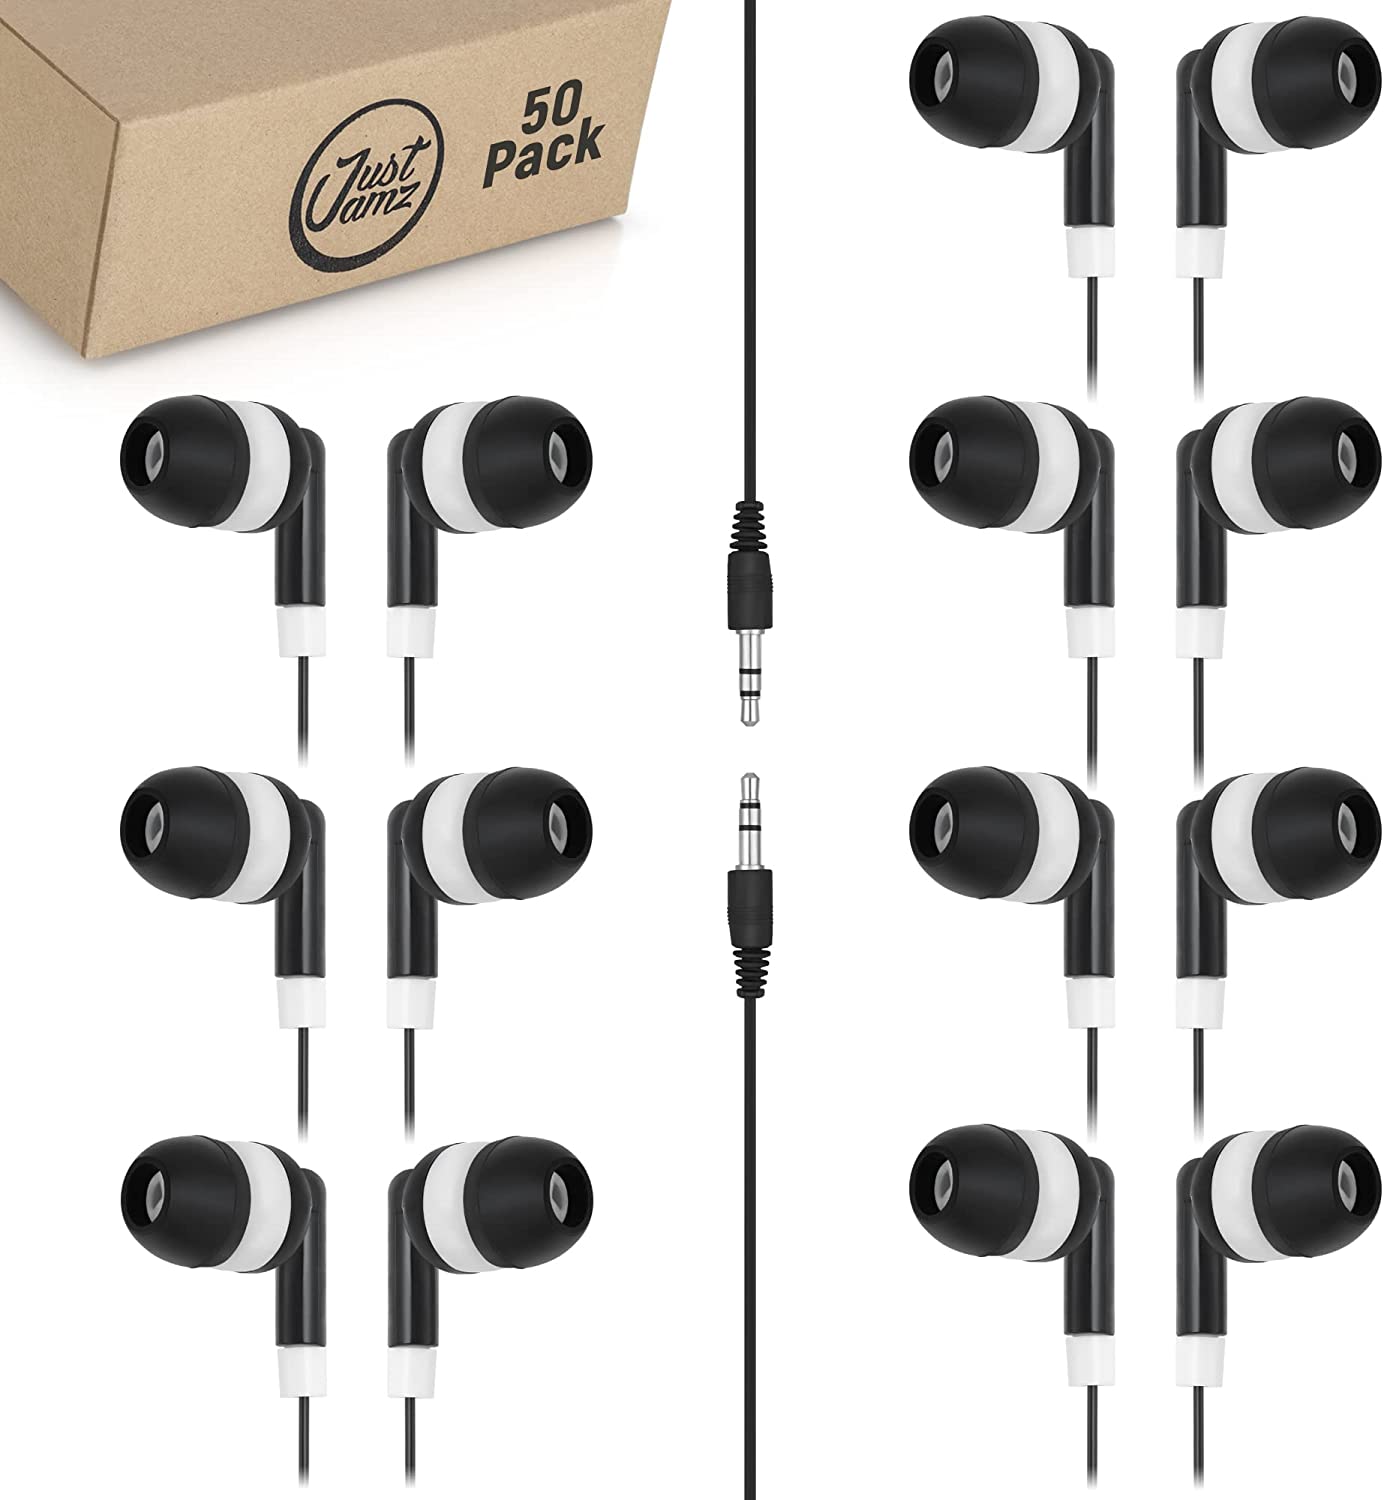 50 Pack of Basic Dot Earphones, Black (United States)